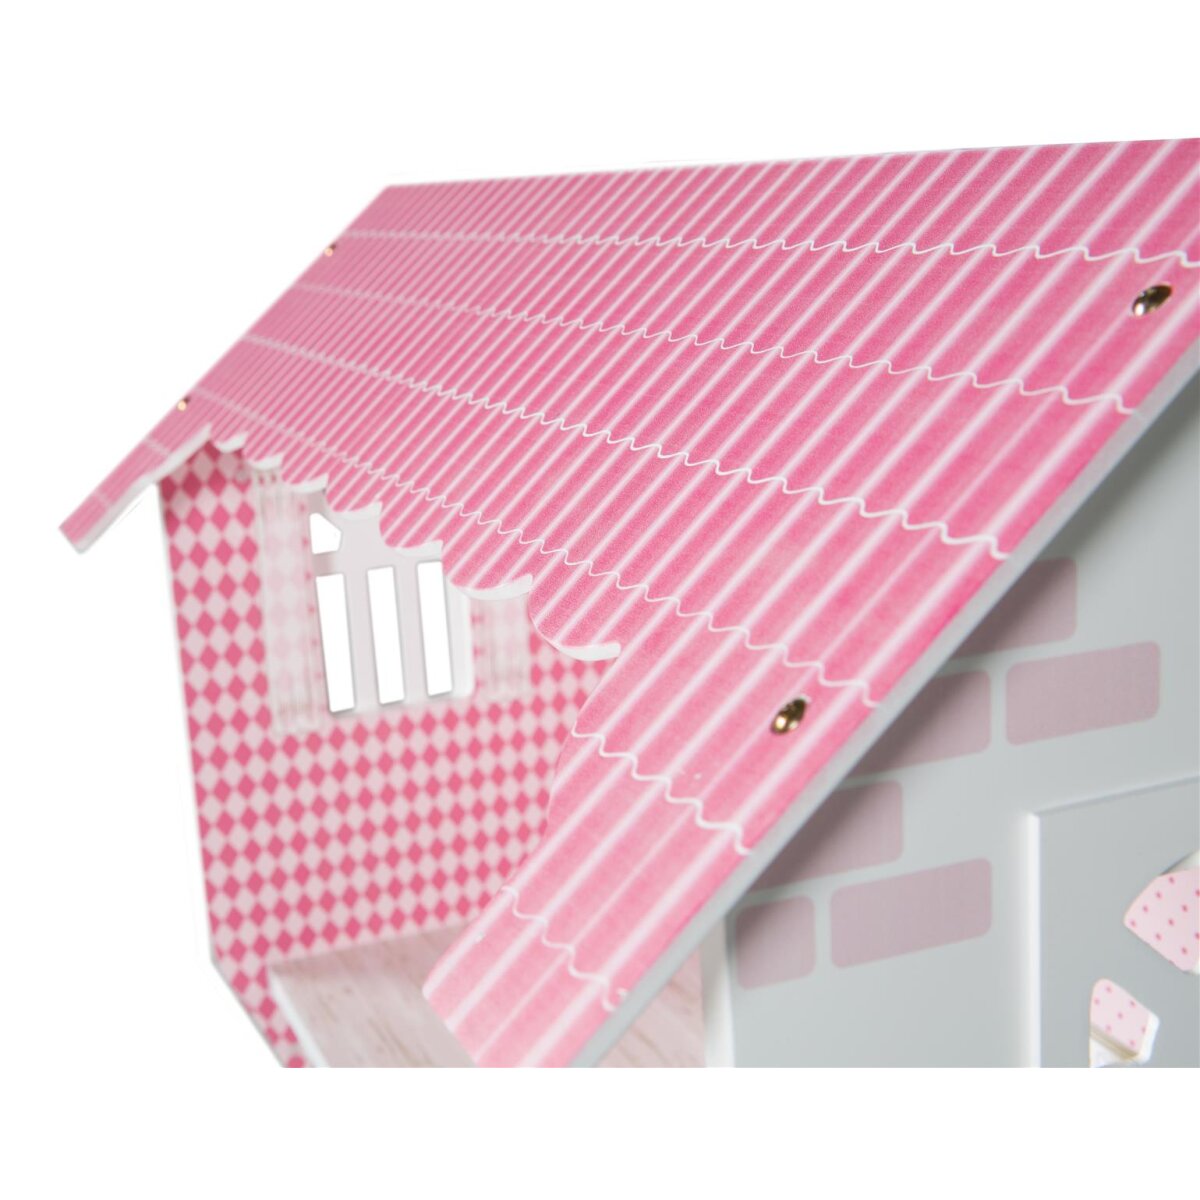 roba Puppenhaus & 64,99 für Spielzeug, B-Ware Aufbewahrungsbox - Spielregal rosa/weiß gut, sehr inkl. €